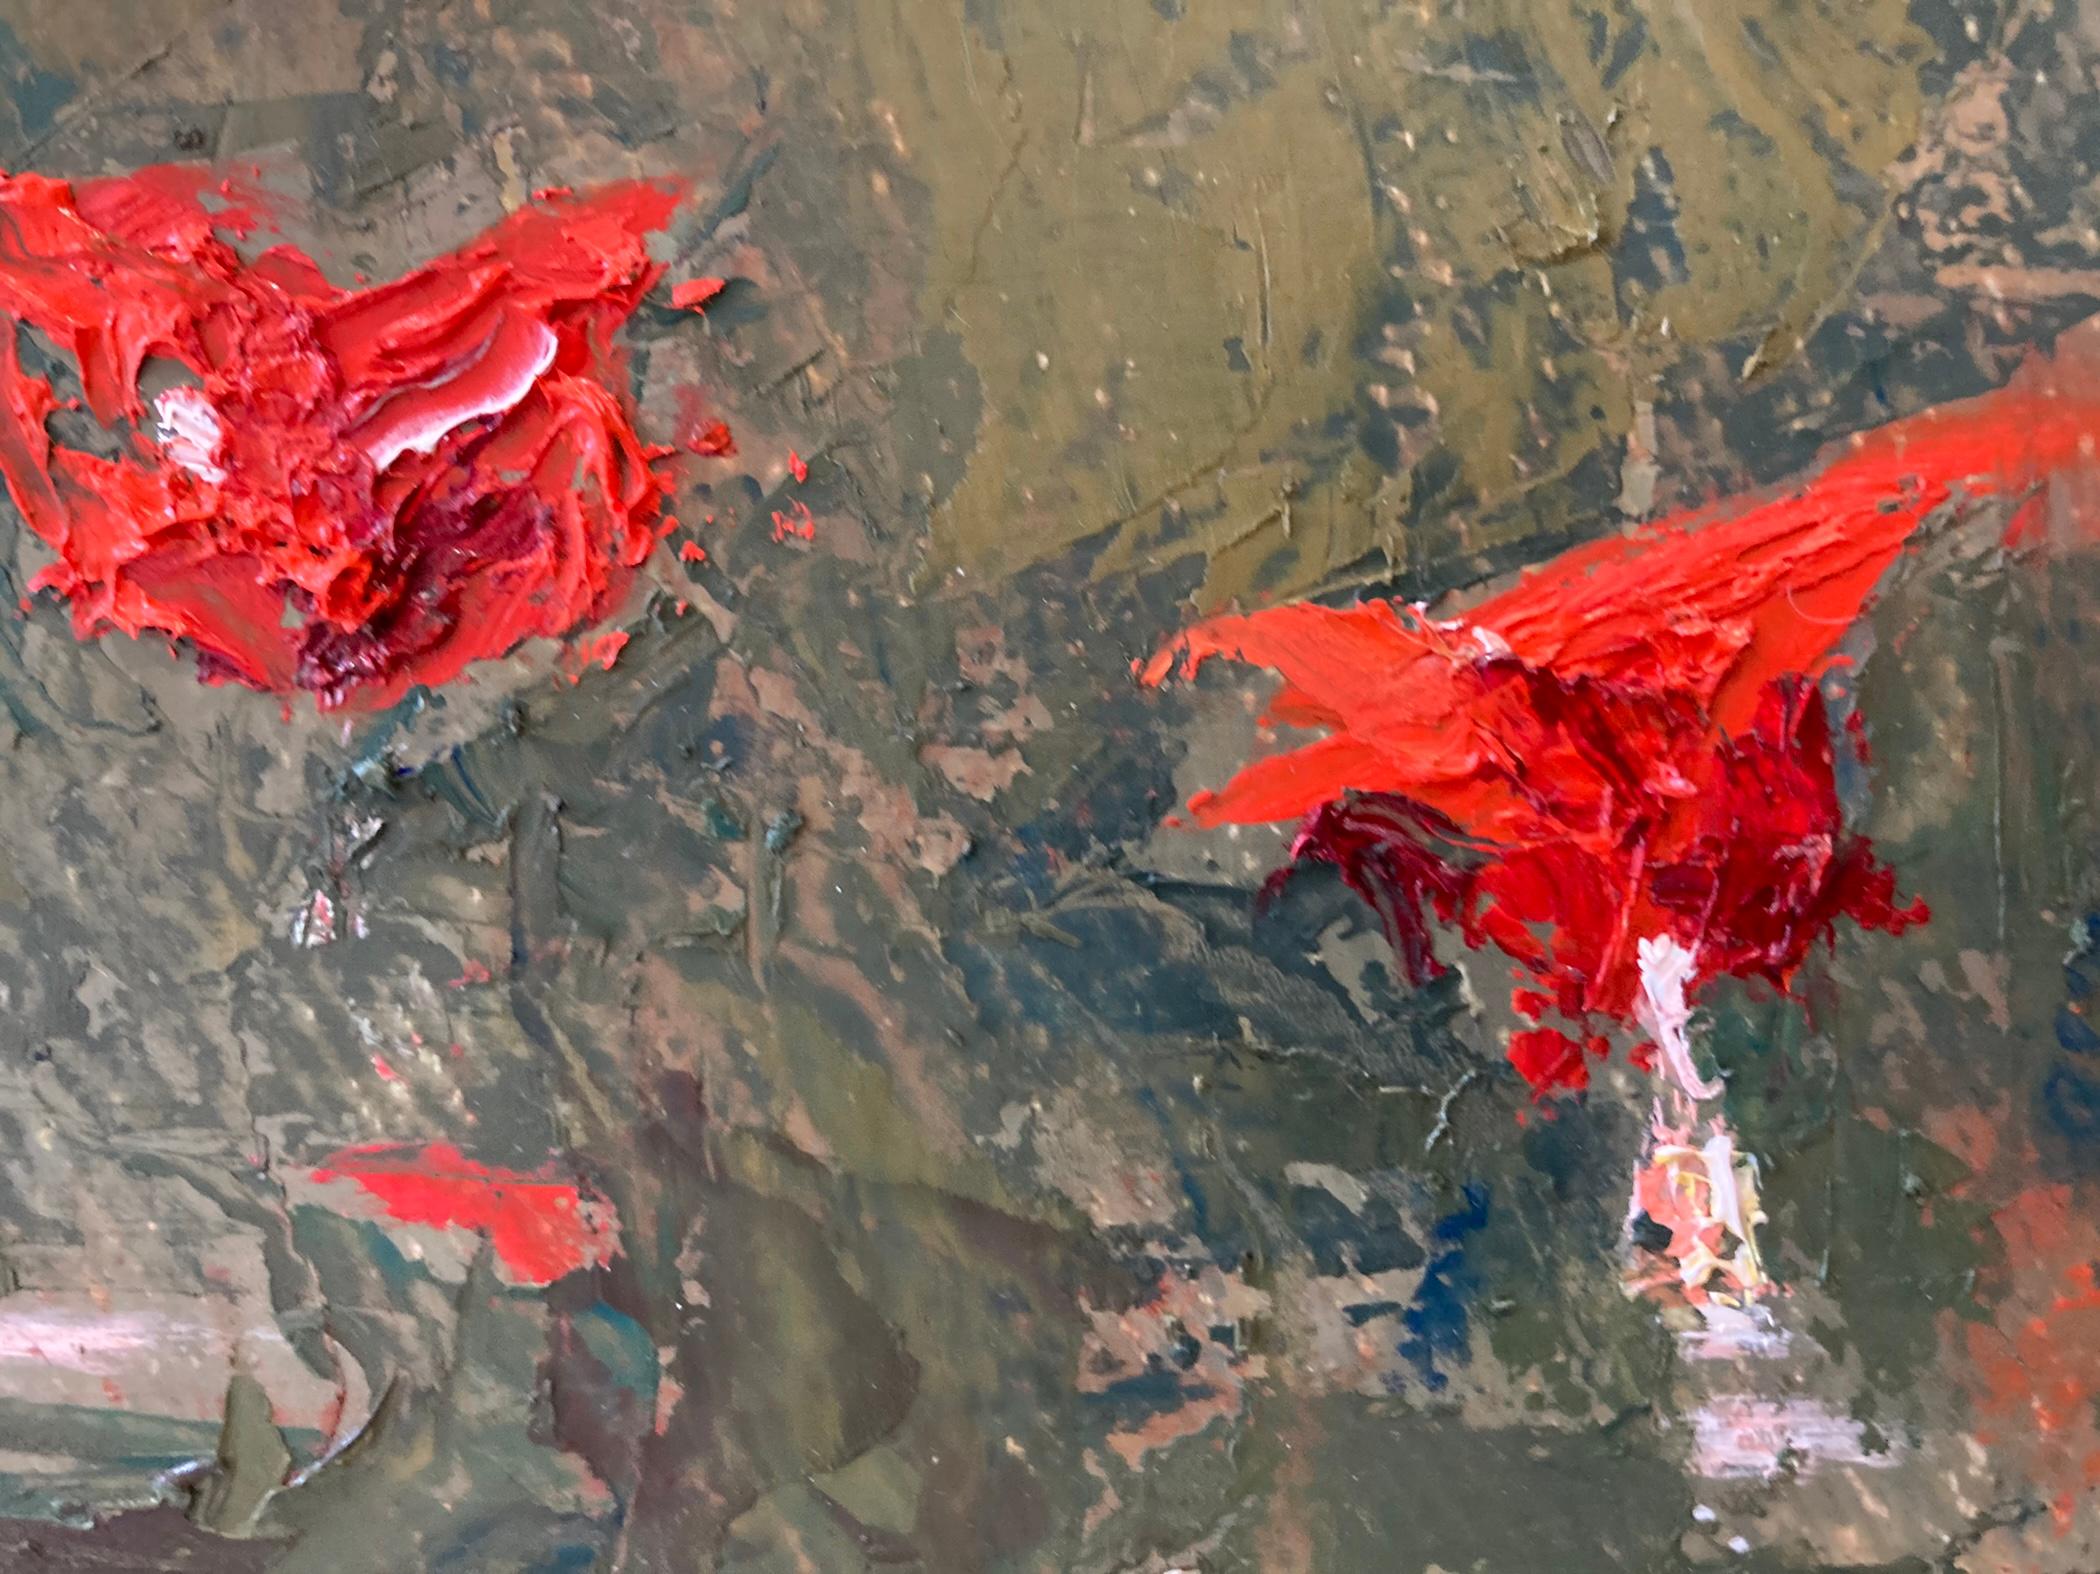 Das Mohnfeld 07.2021  ist ein abstraktes Palettenmesser-Landschaftsgemälde des amerikanischen impressionistischen Malers Nelson Holbrook White aus der dritten Generation. 

Rahmen Abmessungen: 19 x 27 Zoll 
Abmessungen des Gemäldes: 12 x 21